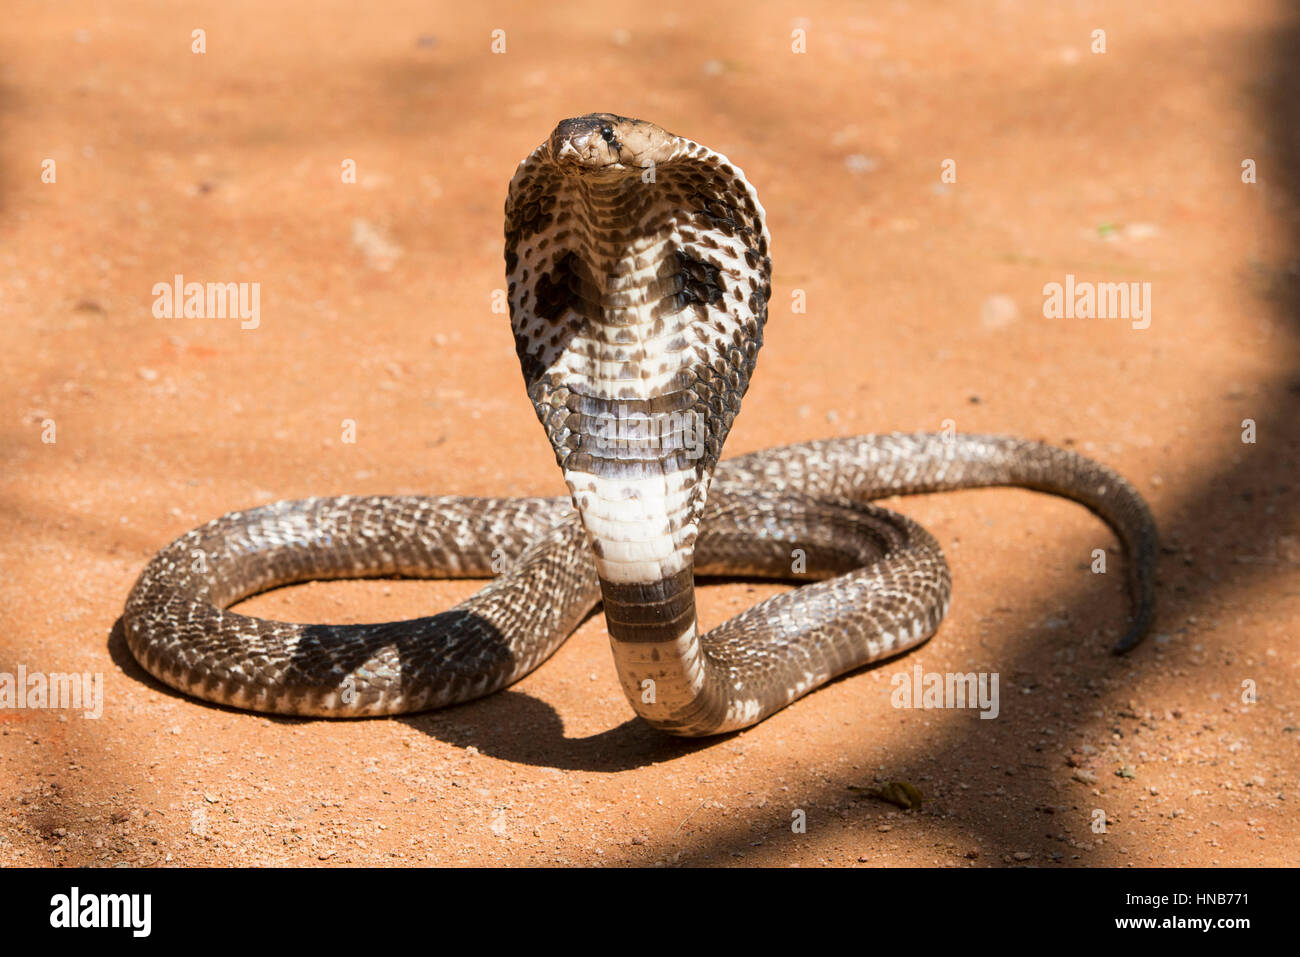 Indian Cobra Or Spectacled Cobra Naja Naja Sri Lanka Stock Photo Alamy